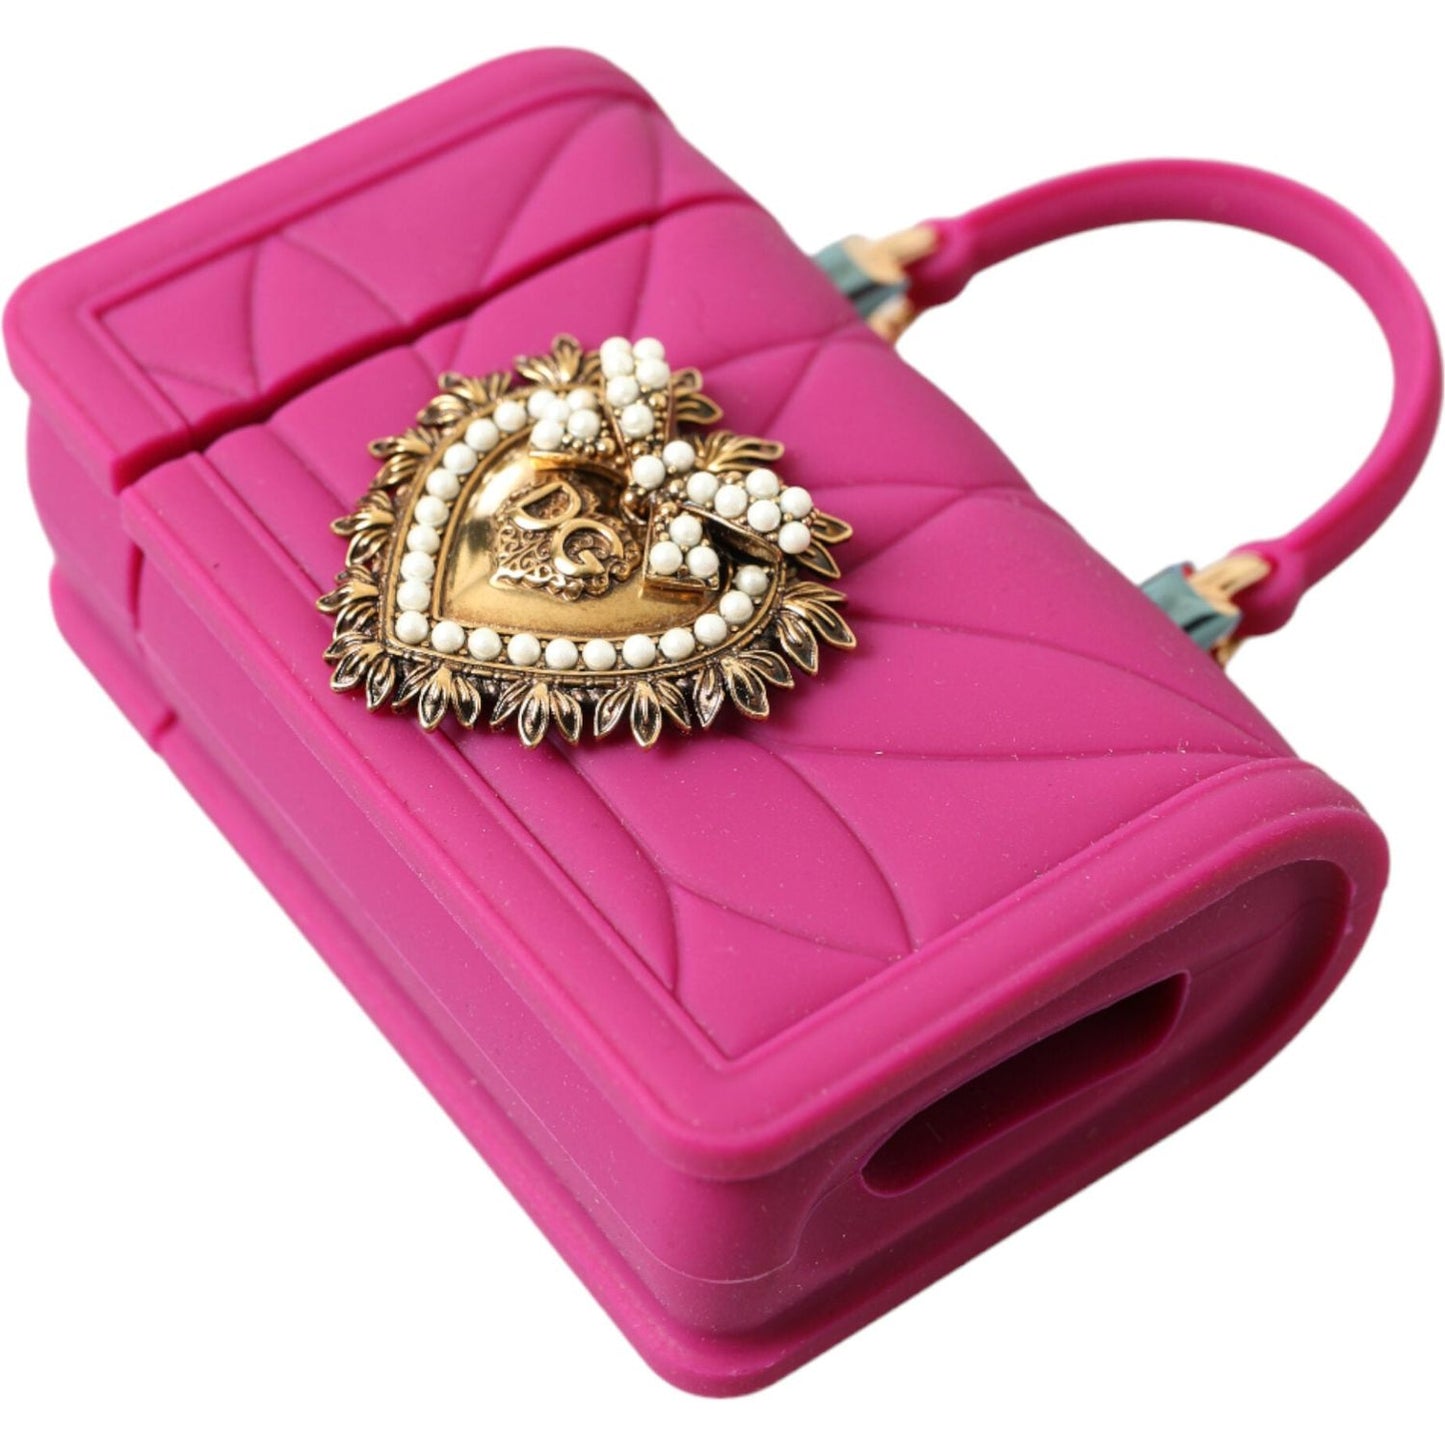 Dolce & GabbanaChic Quilted Silicone Airpods Case - Pink & GoldMcRichard Designer Brands£249.00